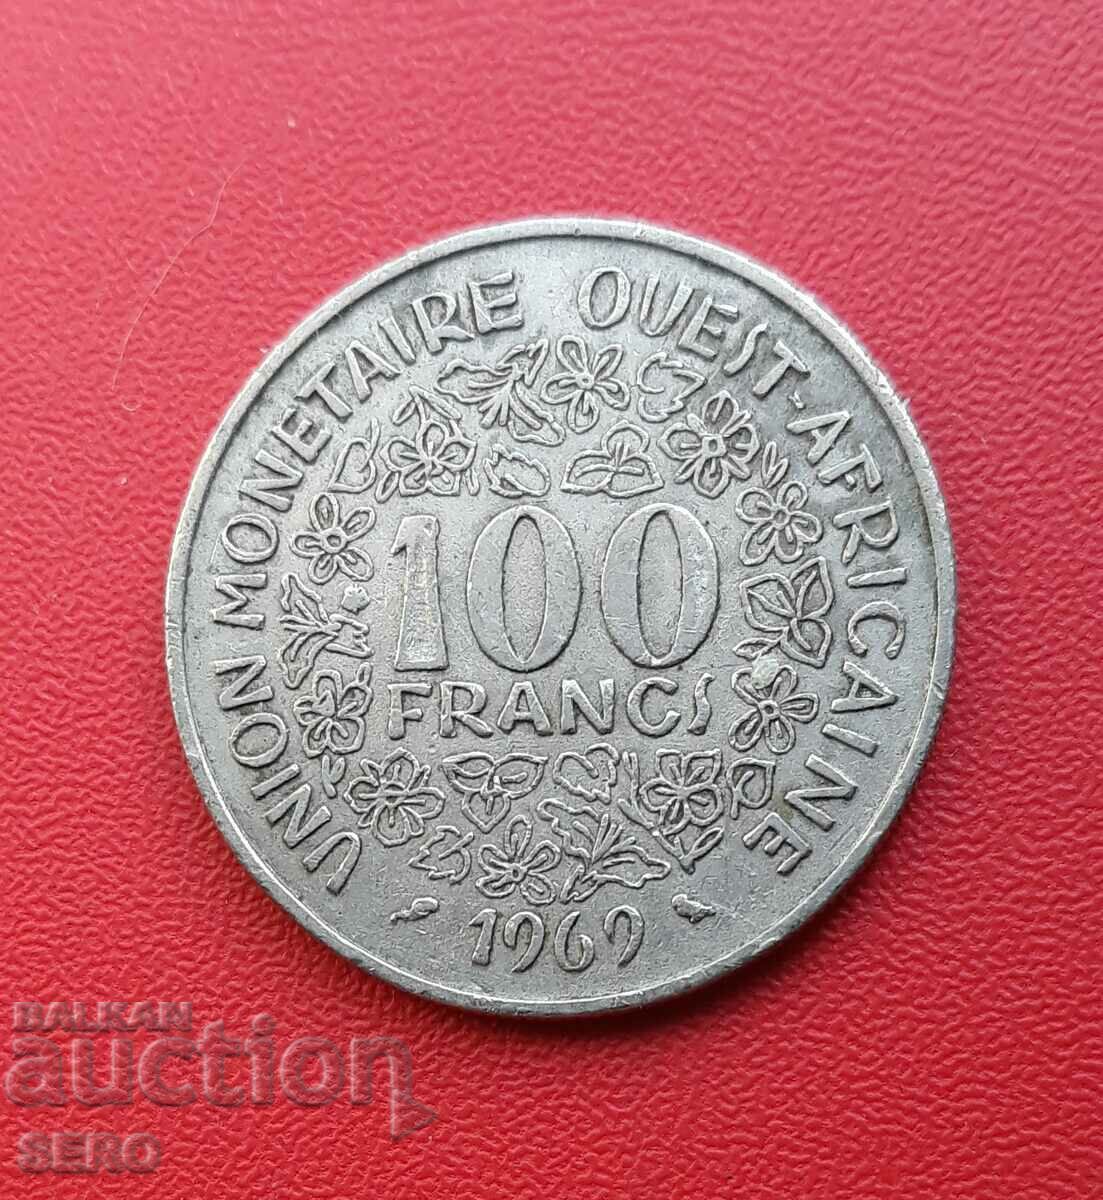 Africa de Vest Franceză - 100 de franci 1969